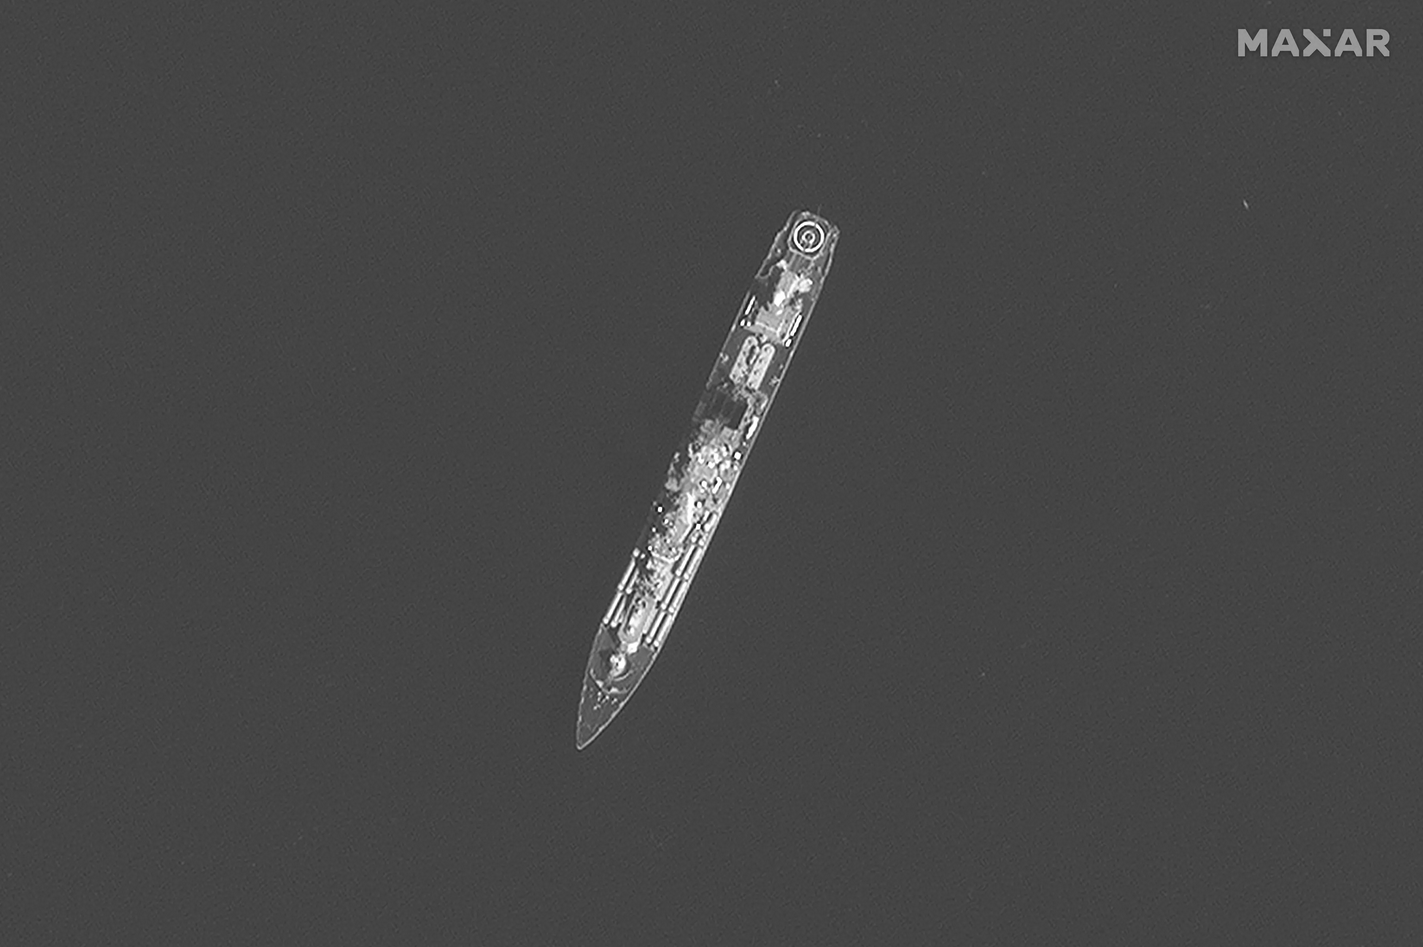 Tuần dương hạm Moskva trên Biển Đen trong ảnh chụp vệ tinh hôm 10/4. Ảnh: Maxar.